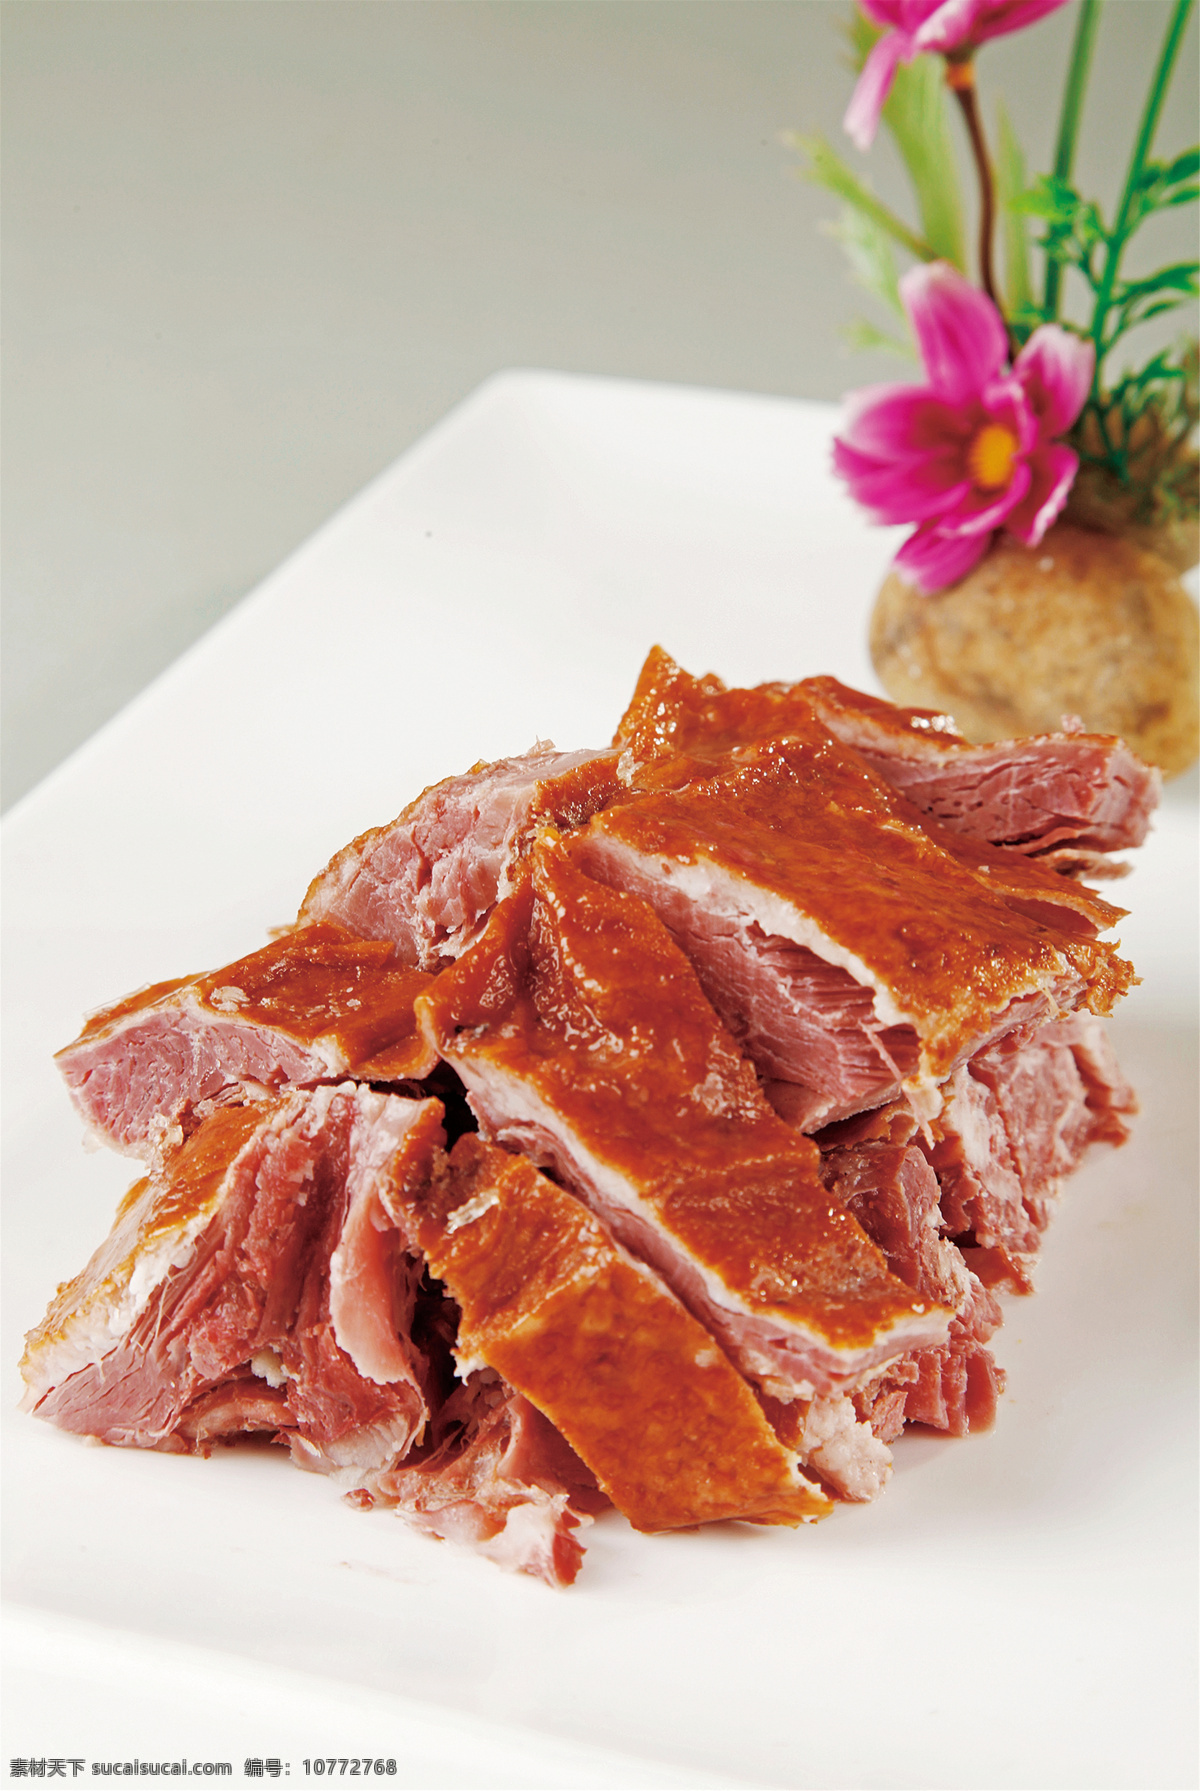 香熏鹅肉图片 香熏鹅肉 美食 传统美食 餐饮美食 高清菜谱用图